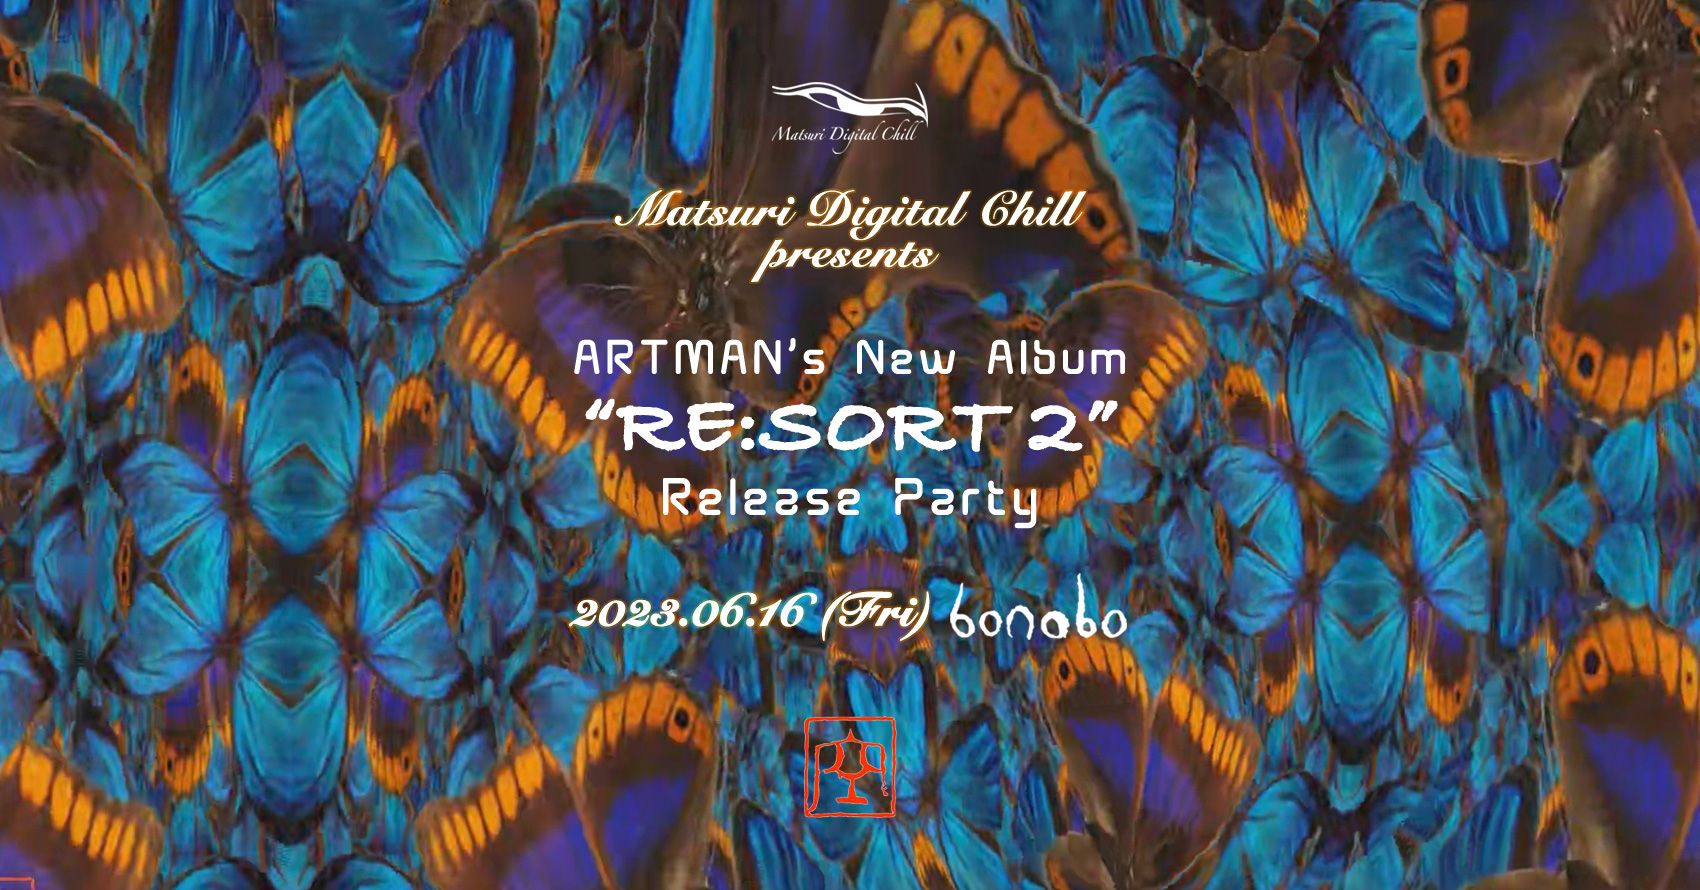 MDC presents ARTMAN's NEW ALBUM "RE:SORT2" release party.